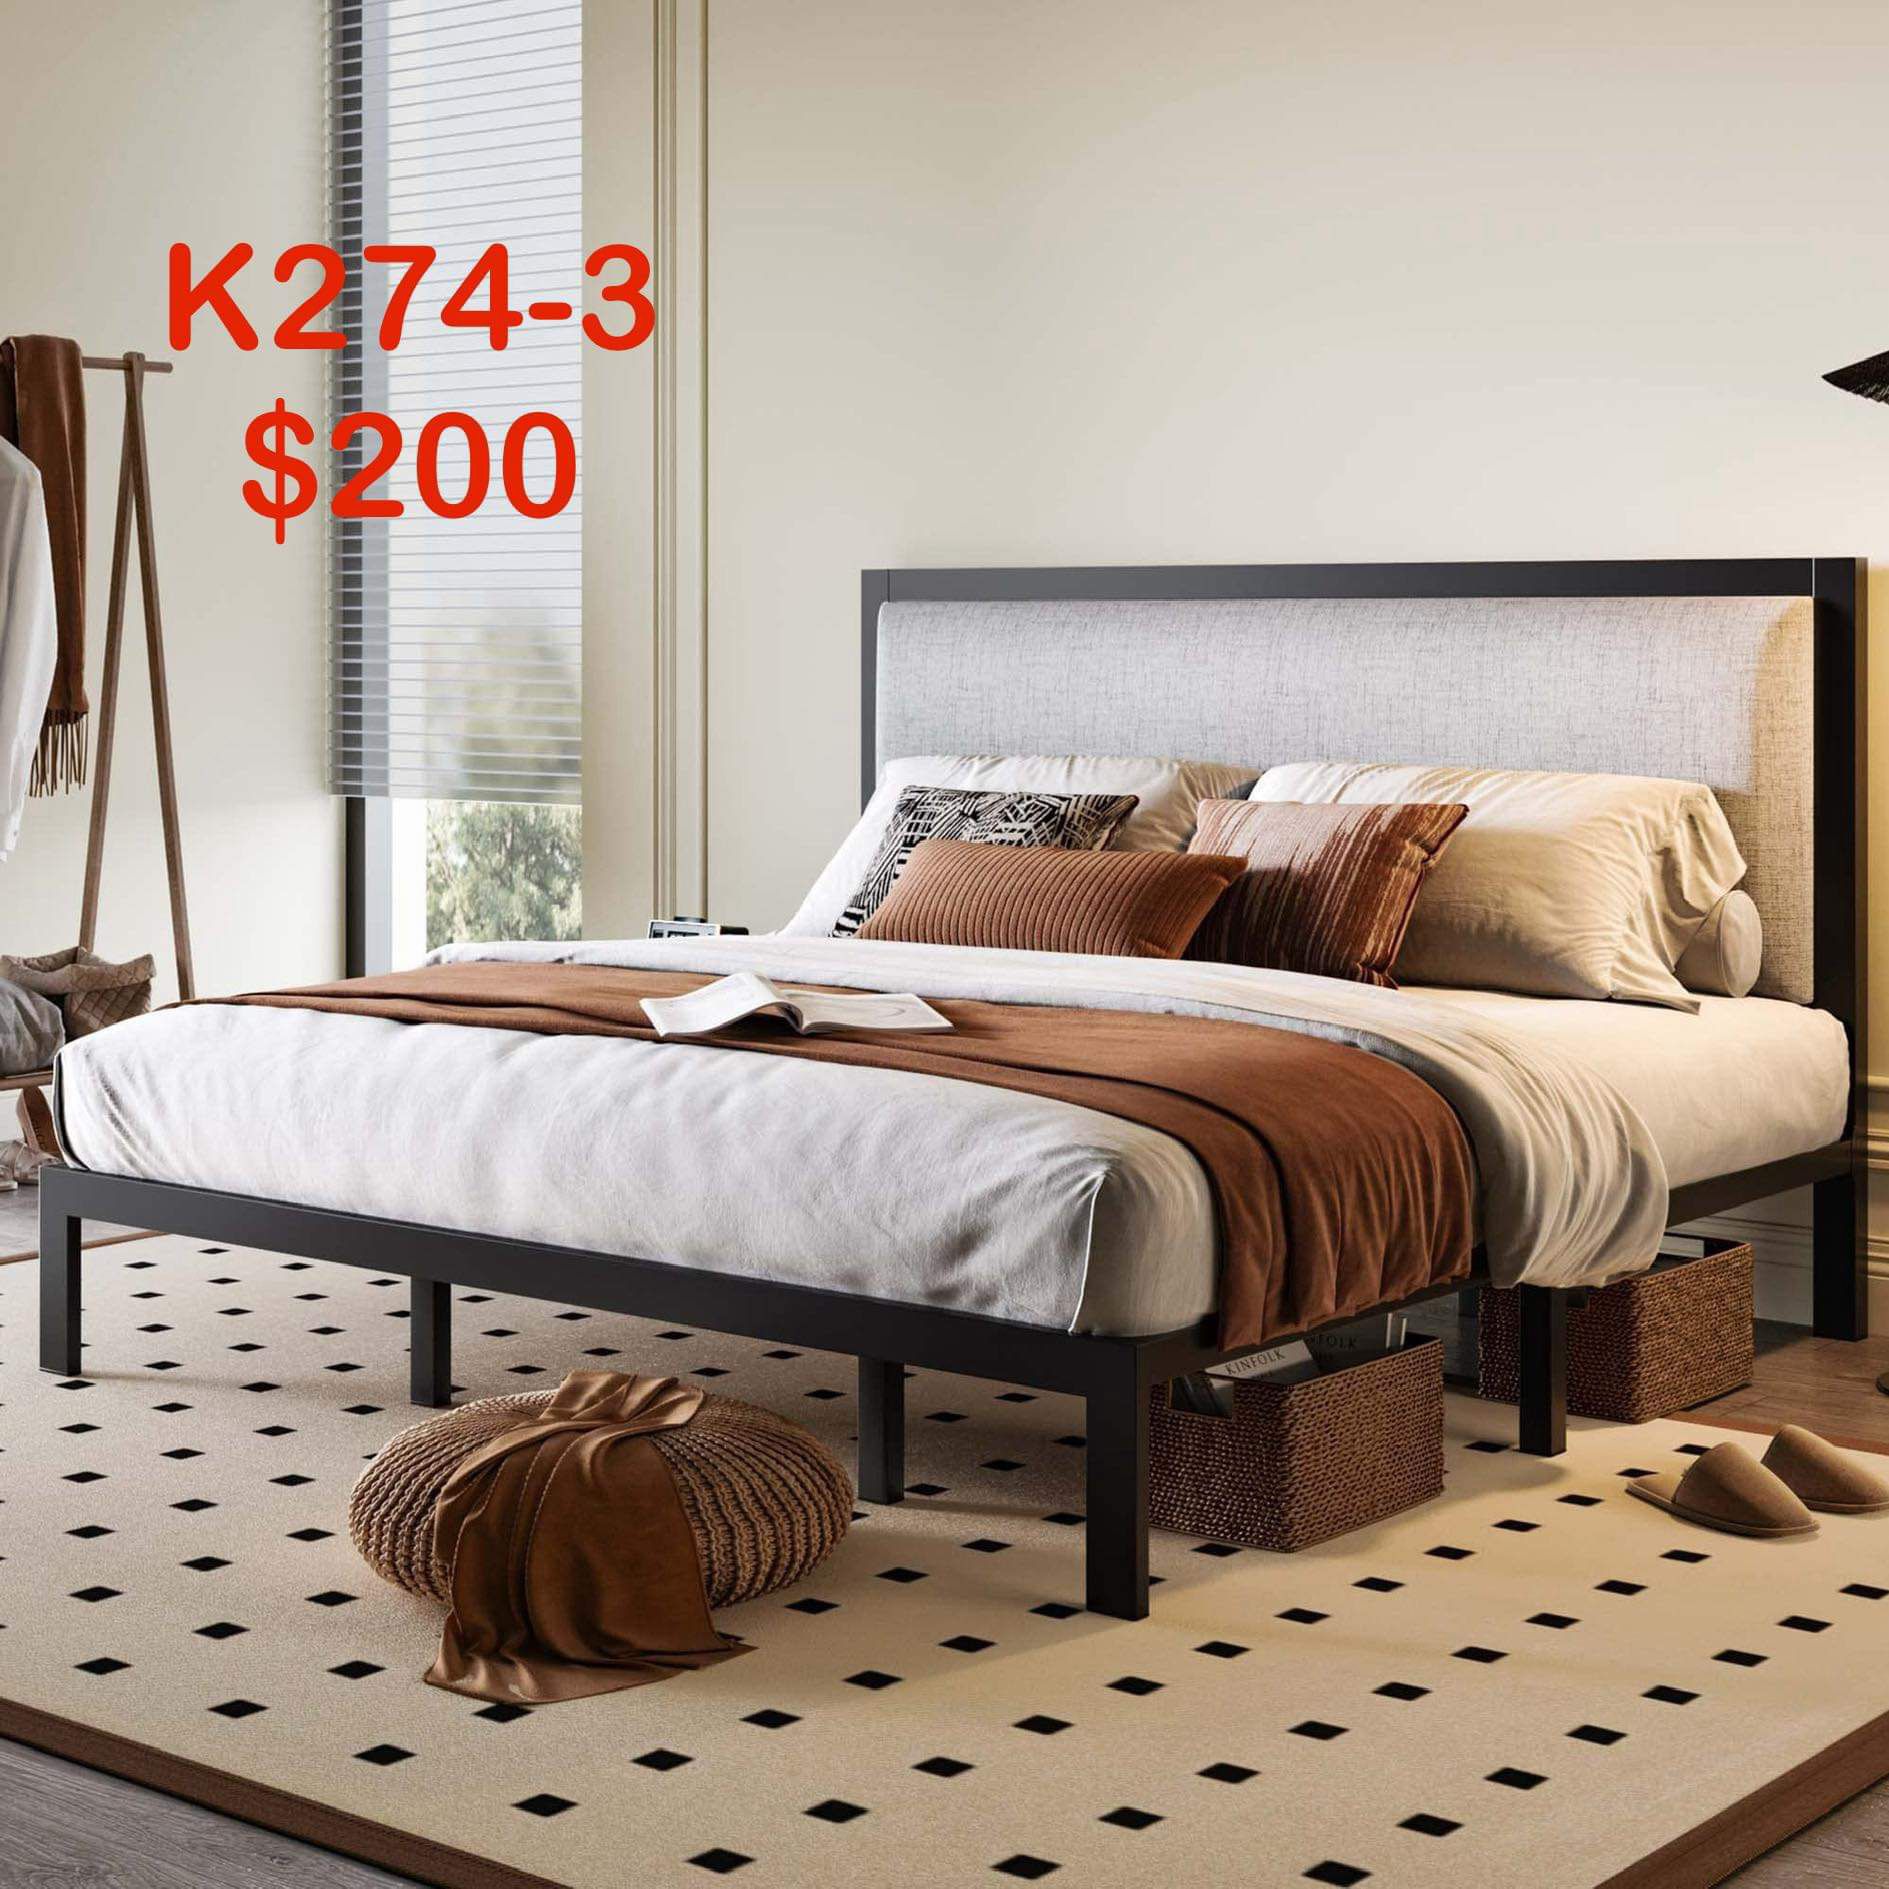 King Size Platform Bed Frame with Minimalist Upholstered Headboard K274-3